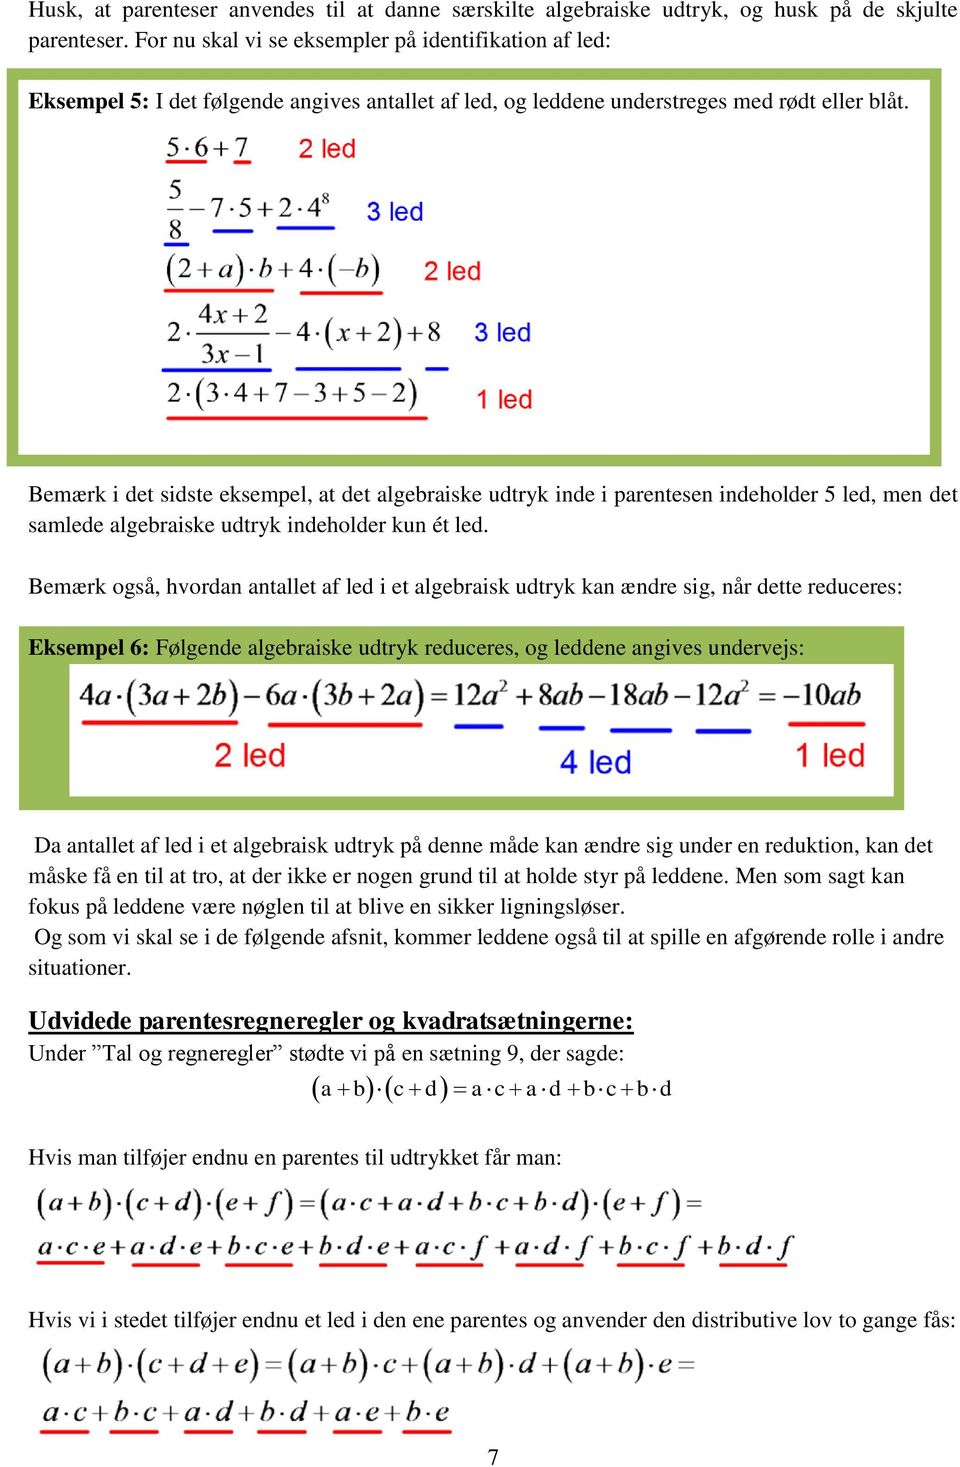 Bemærk i det sidste eksempel, at det algebraiske udtryk inde i parentesen indeholder 5 led, men det samlede algebraiske udtryk indeholder kun ét led.